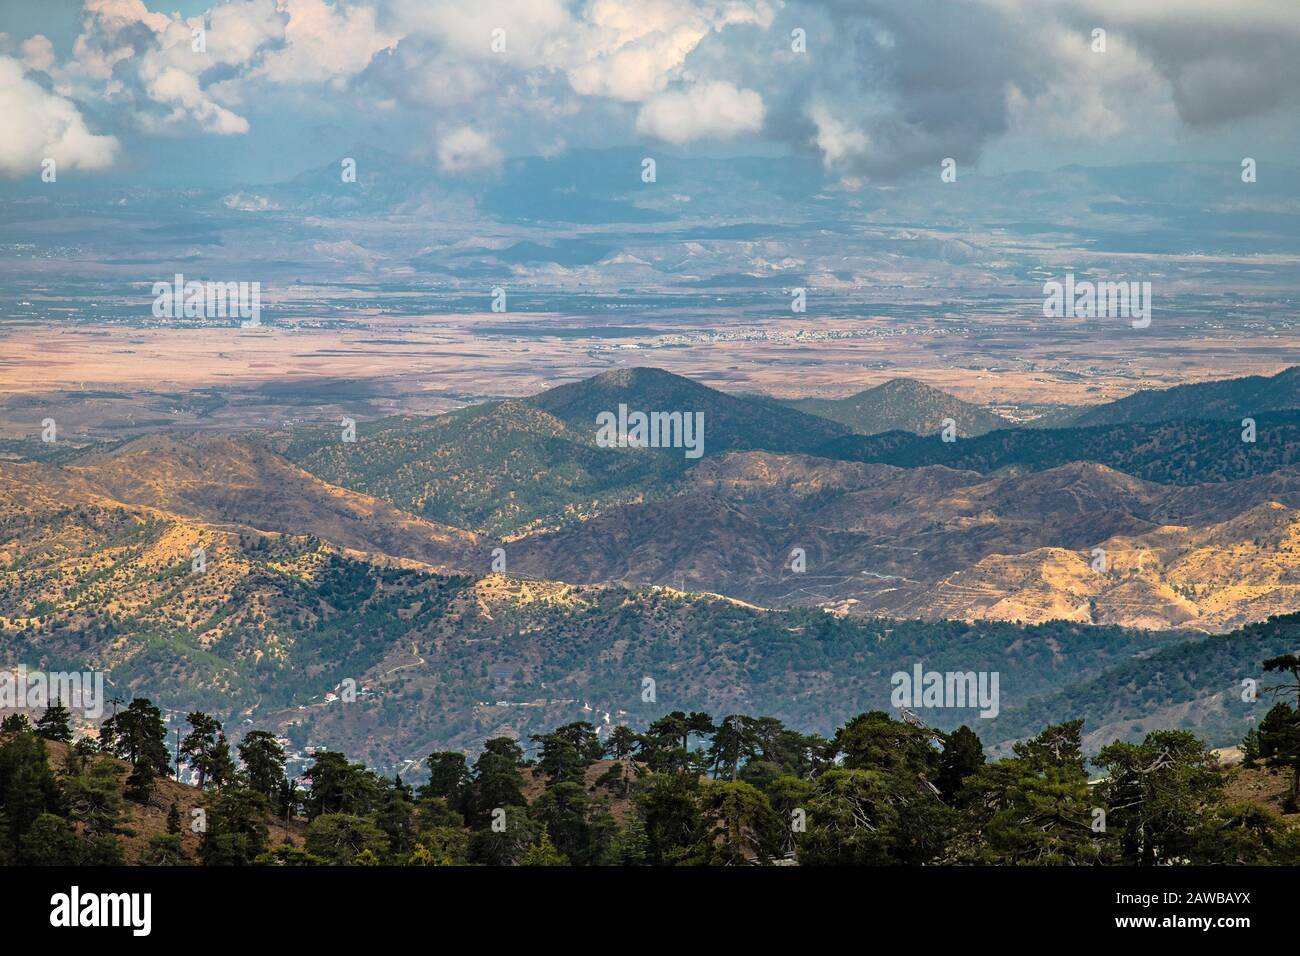 Blick vom Olymp, dem höchsten Gipfel der Insel Zypern. Troodos Berge  Stockfotografie - Alamy